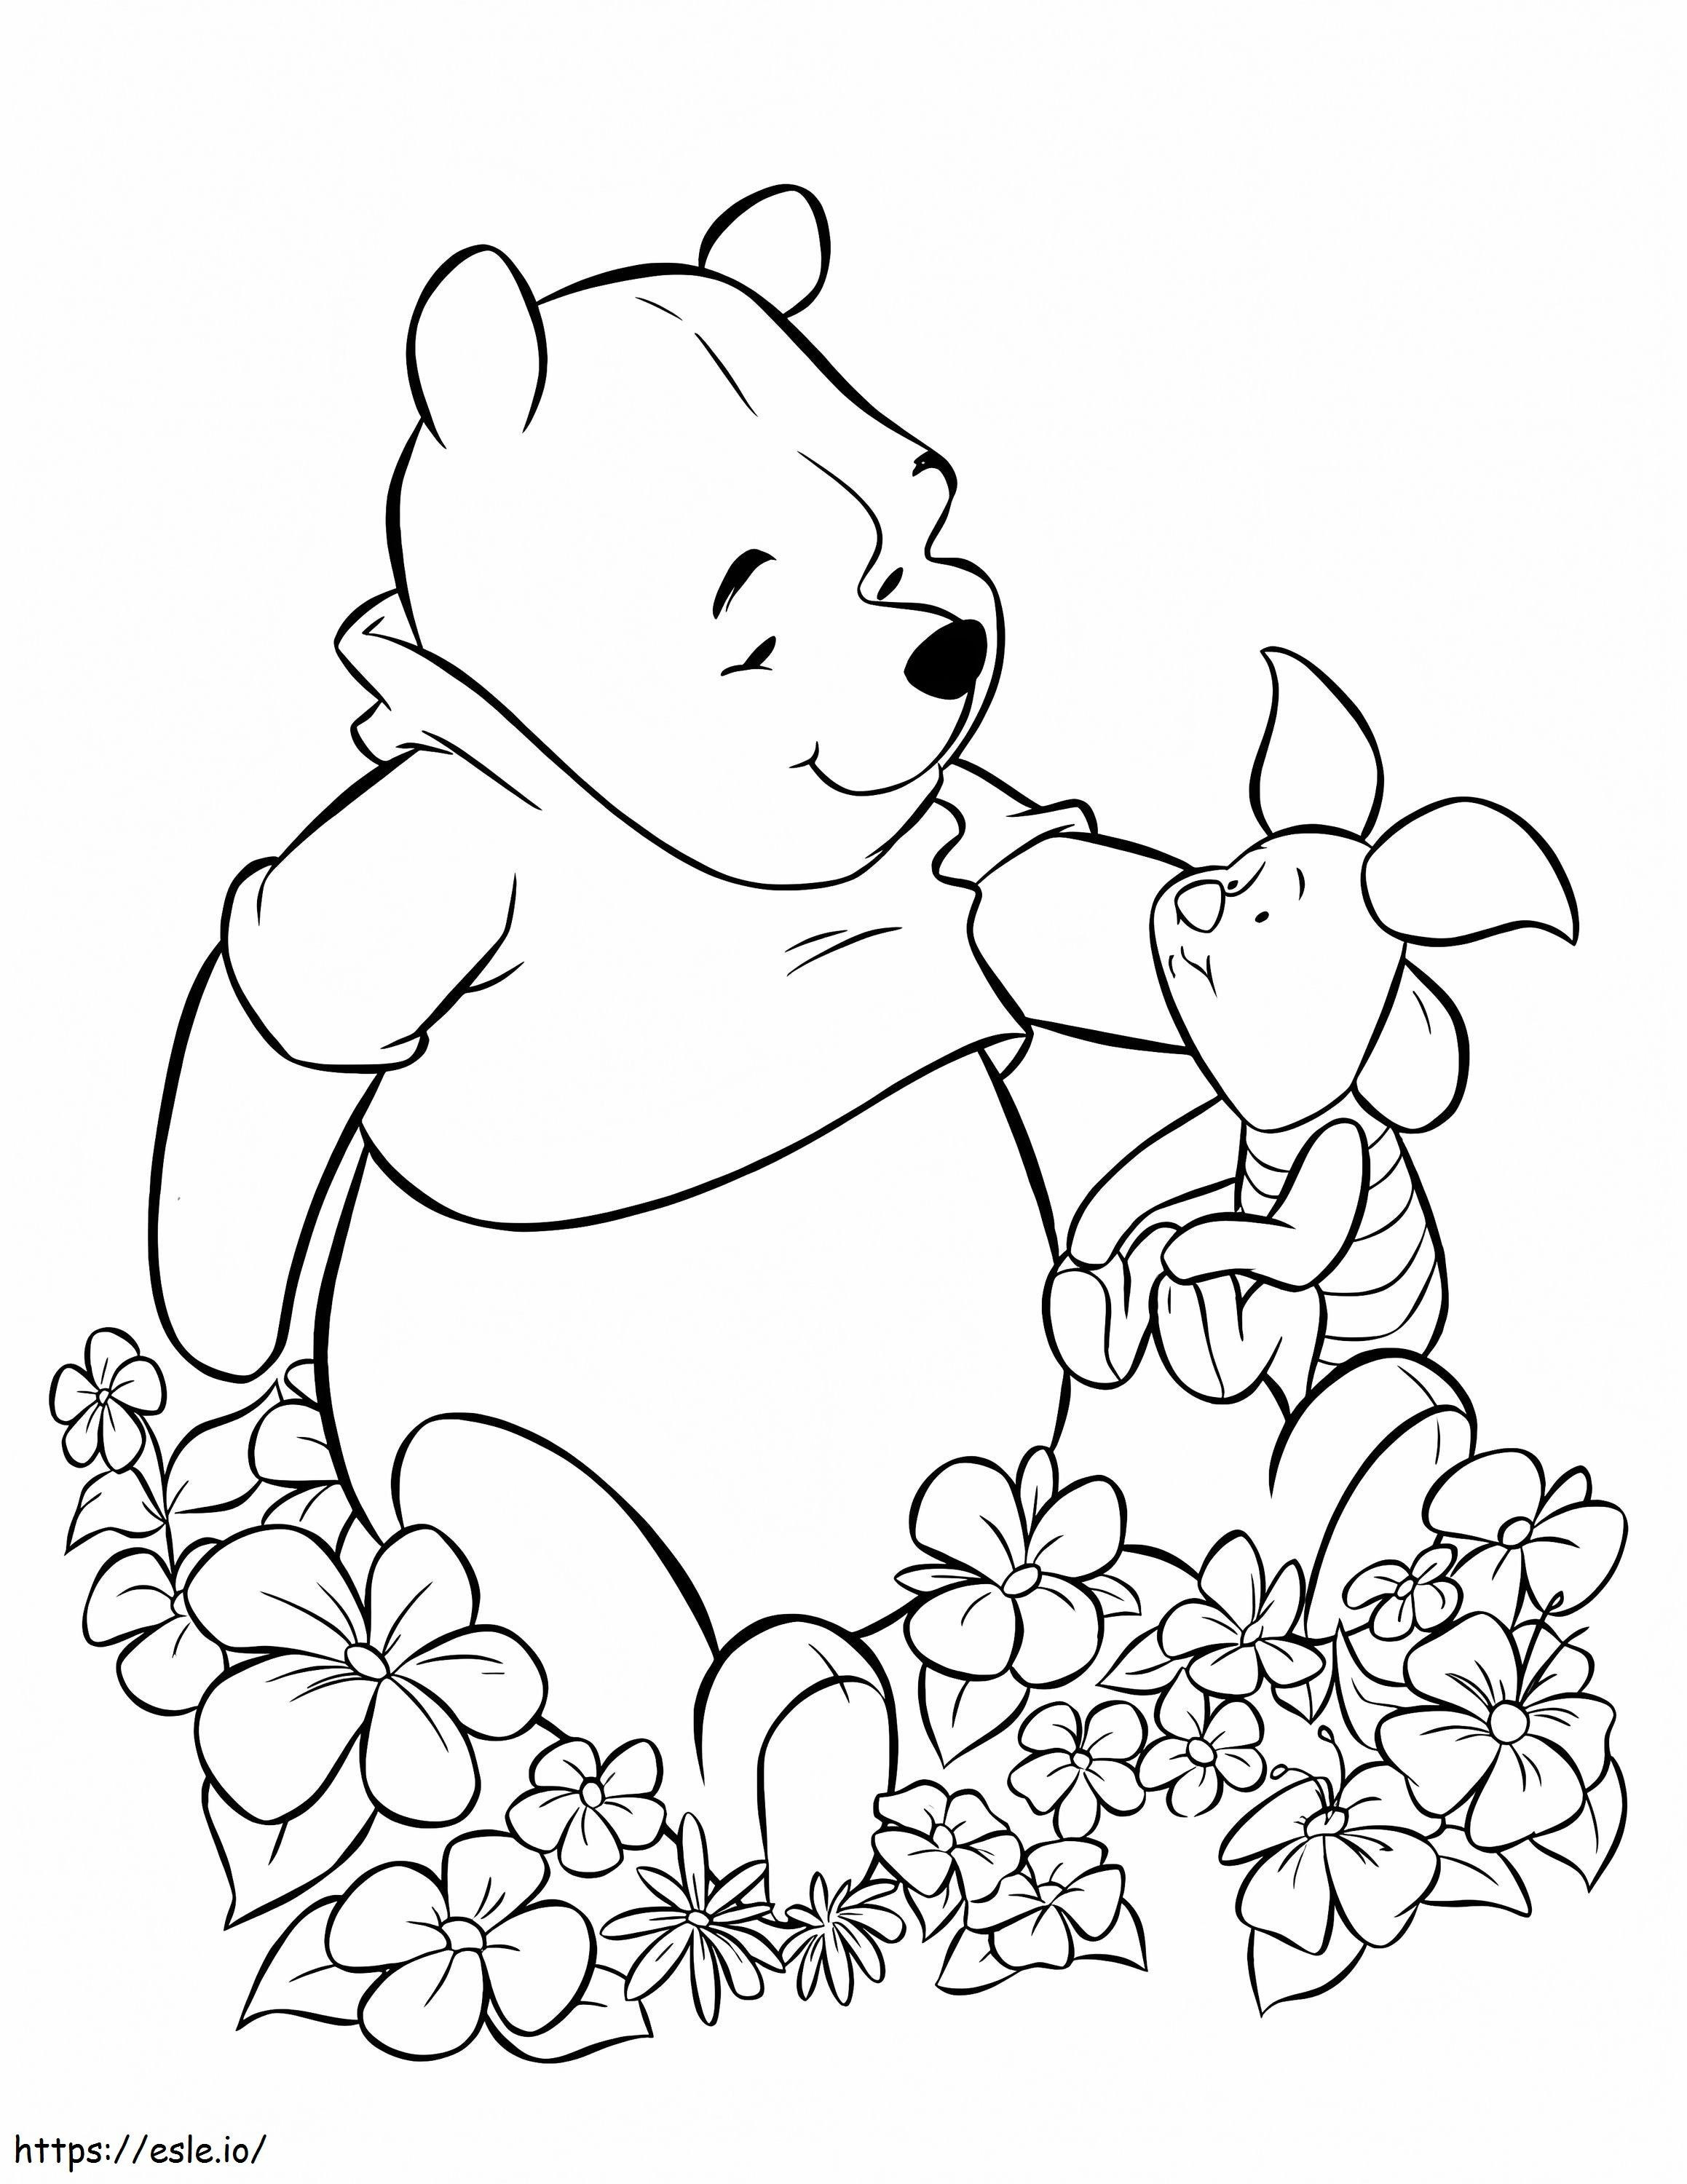 Ursinho Pooh e leitão com flores para colorir